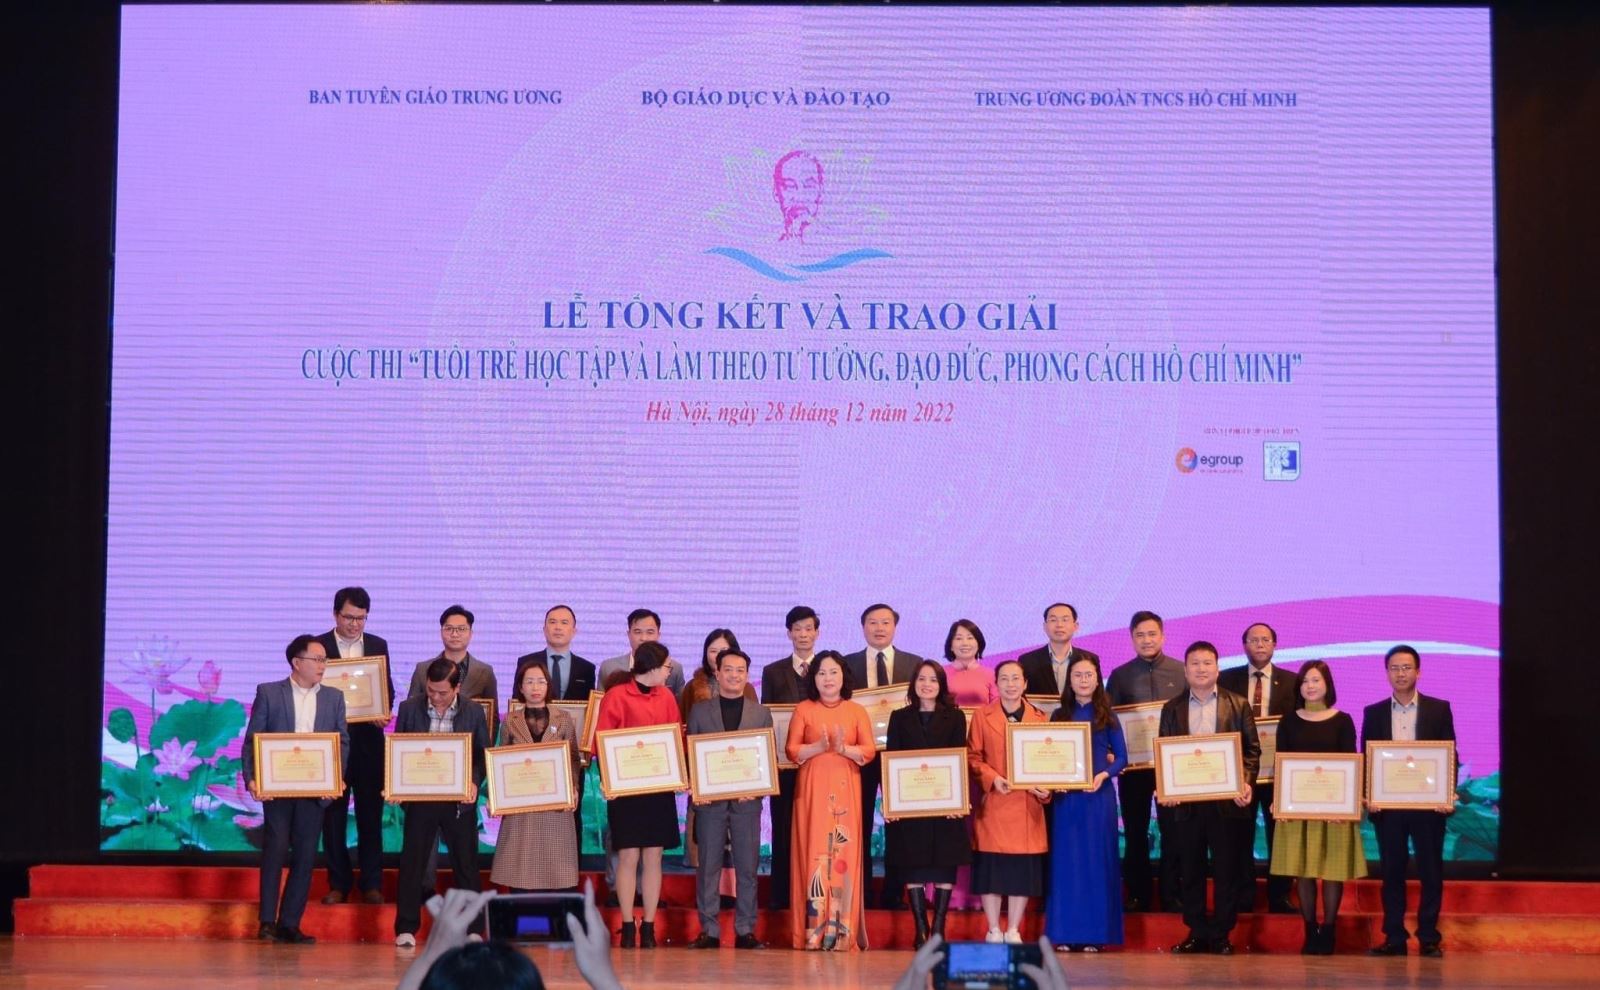 Trường Đại học Vinh được Bộ Giáo dục và đào tạo tặng Bằng khen vì đã có thành tích xuất sắc trong tổ chức, triển khai cuộc thi “Tuổi trẻ học tập và làm theo tư tưởng, đạo đức, phong cách Hồ Chí Minh”